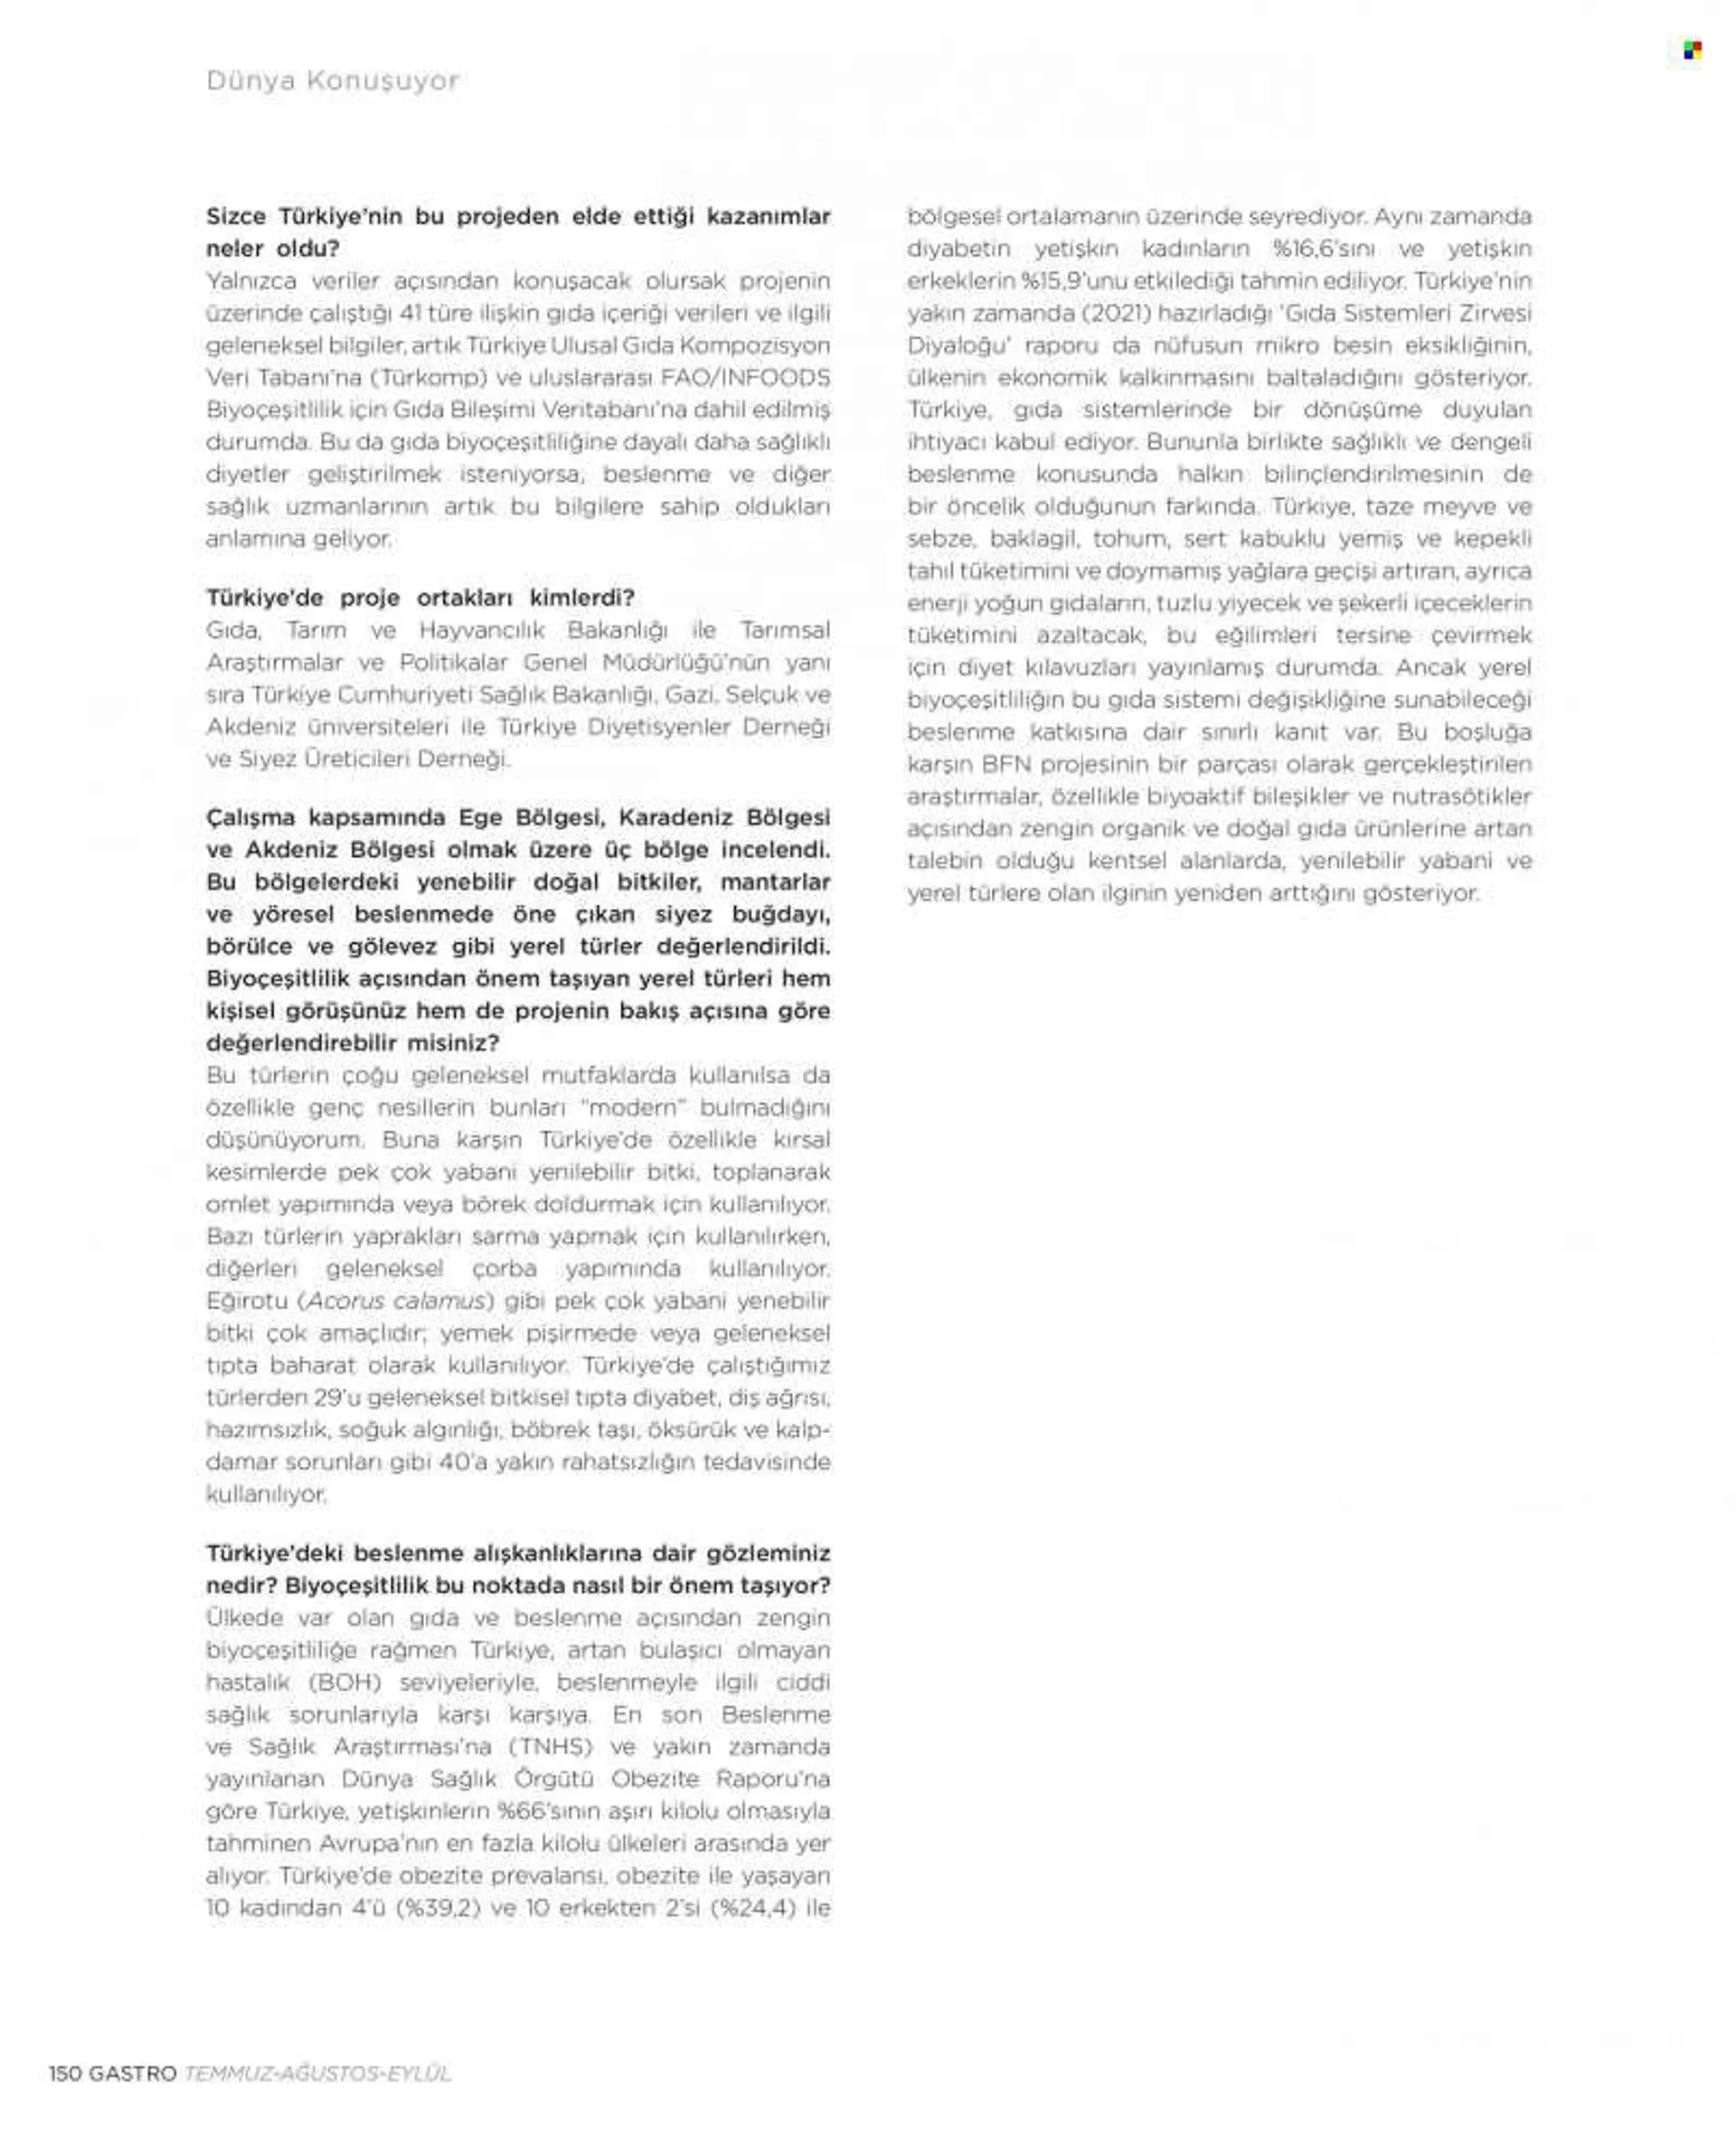 Metro aktüel ürünler, broşür  - 7.1.2022 - 9.30.2022. Sayfa 129.
